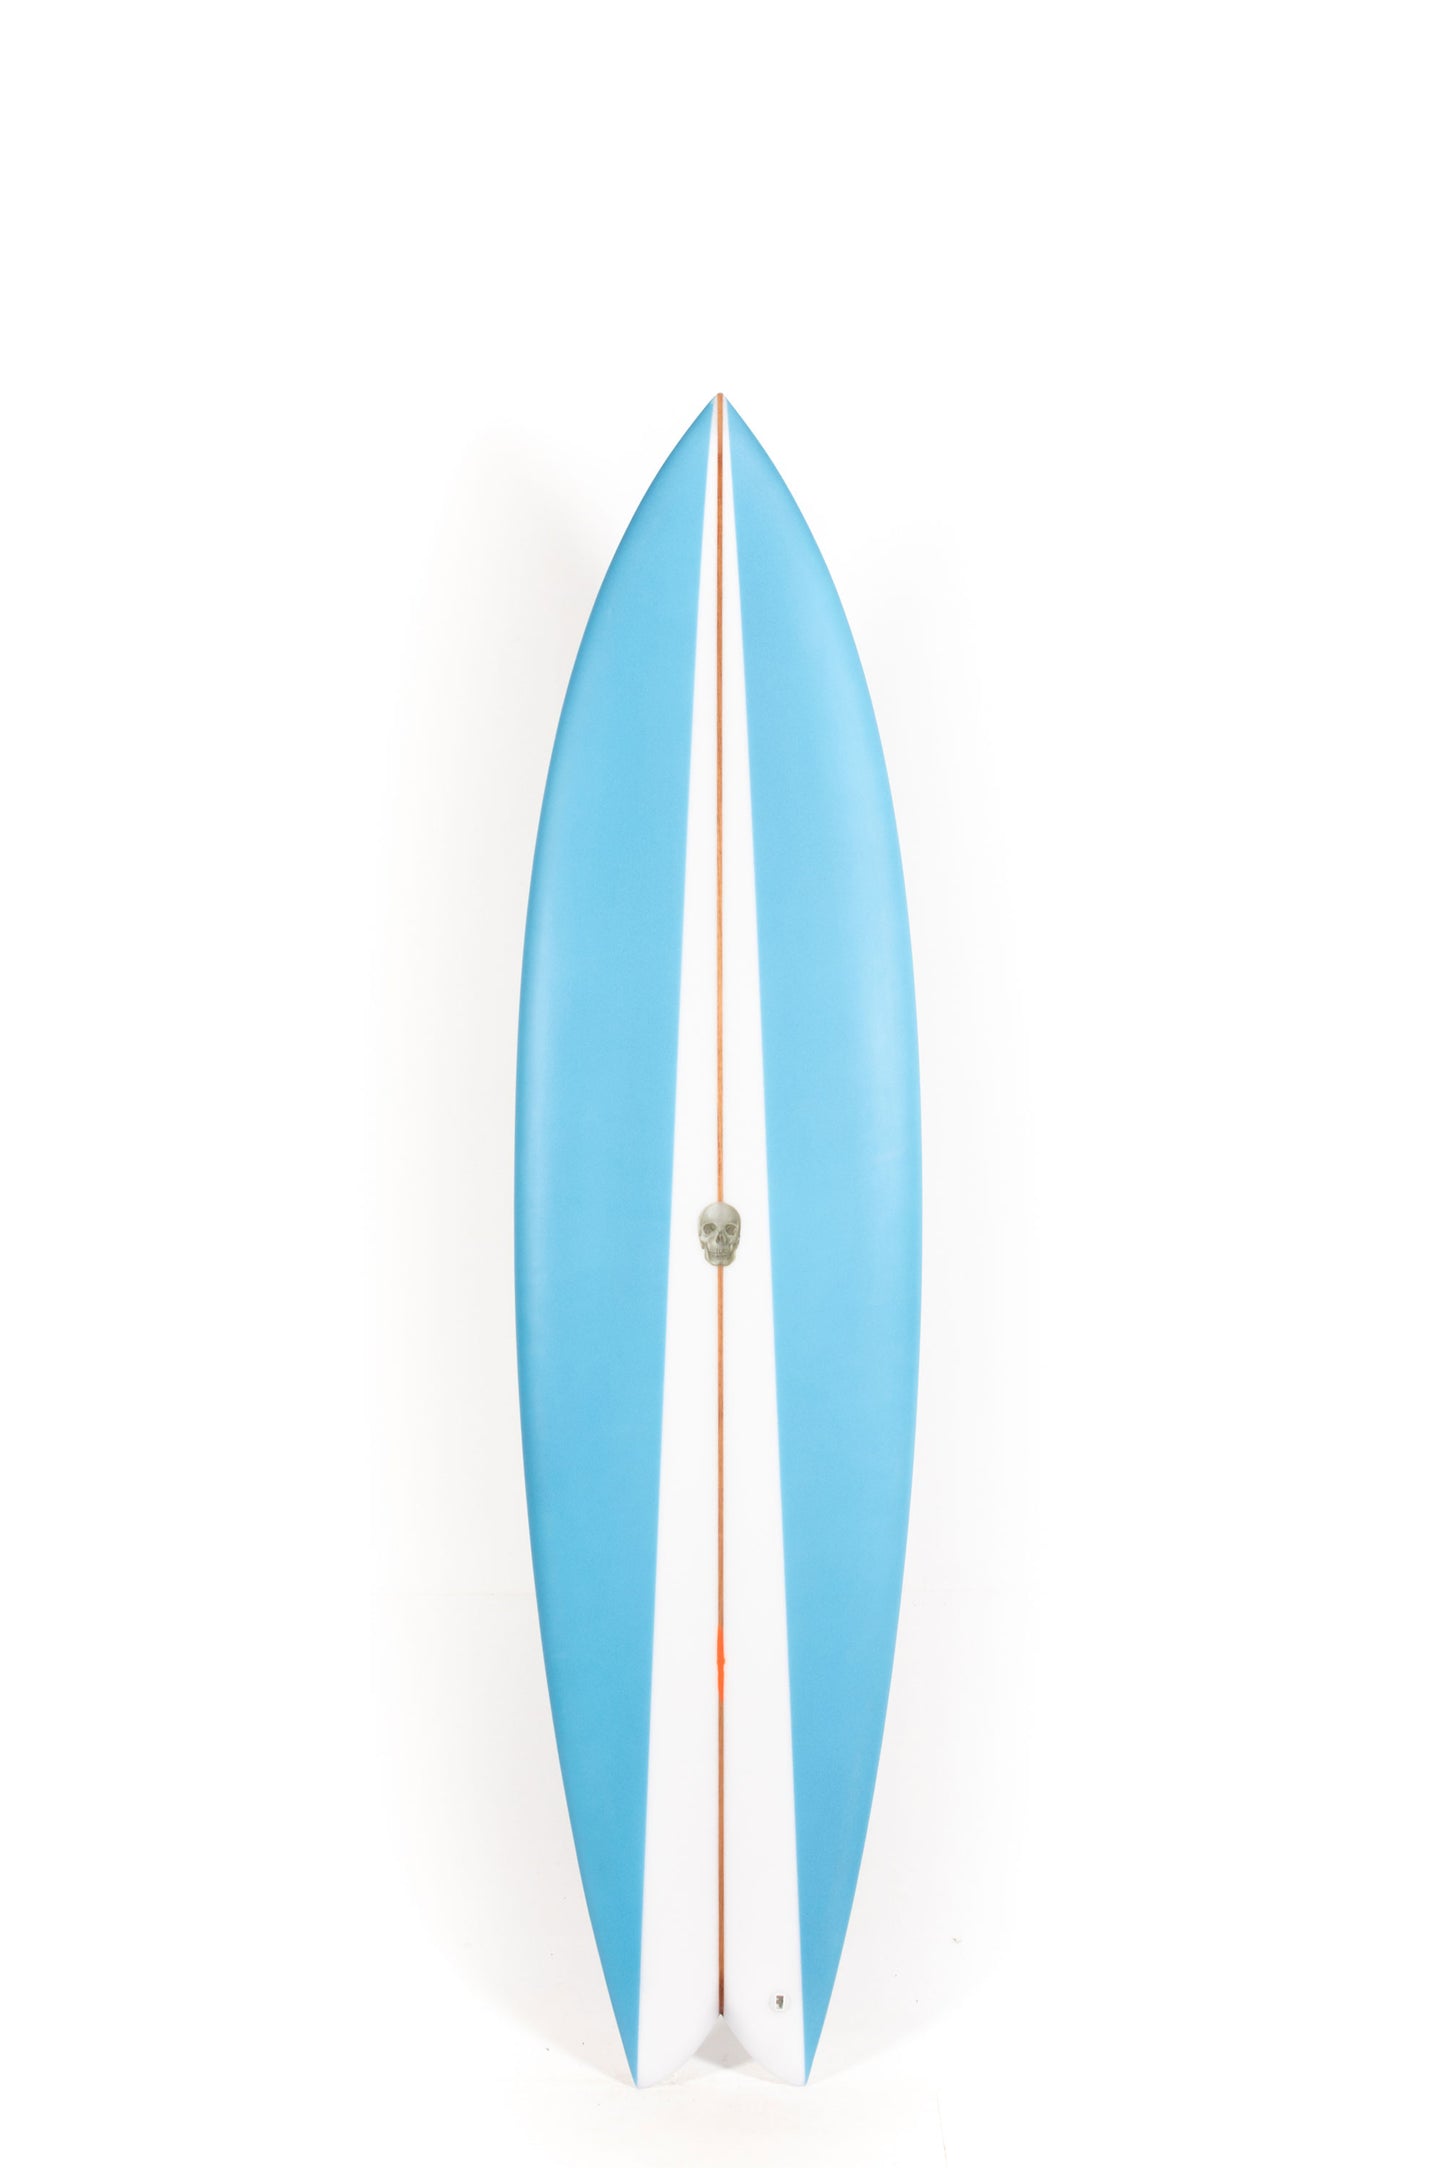 Pukas Surf Shop - Christenson Surfboards - NAUTILUS - 7'4" x 21 1/2 x 2 3/4 - CX05015